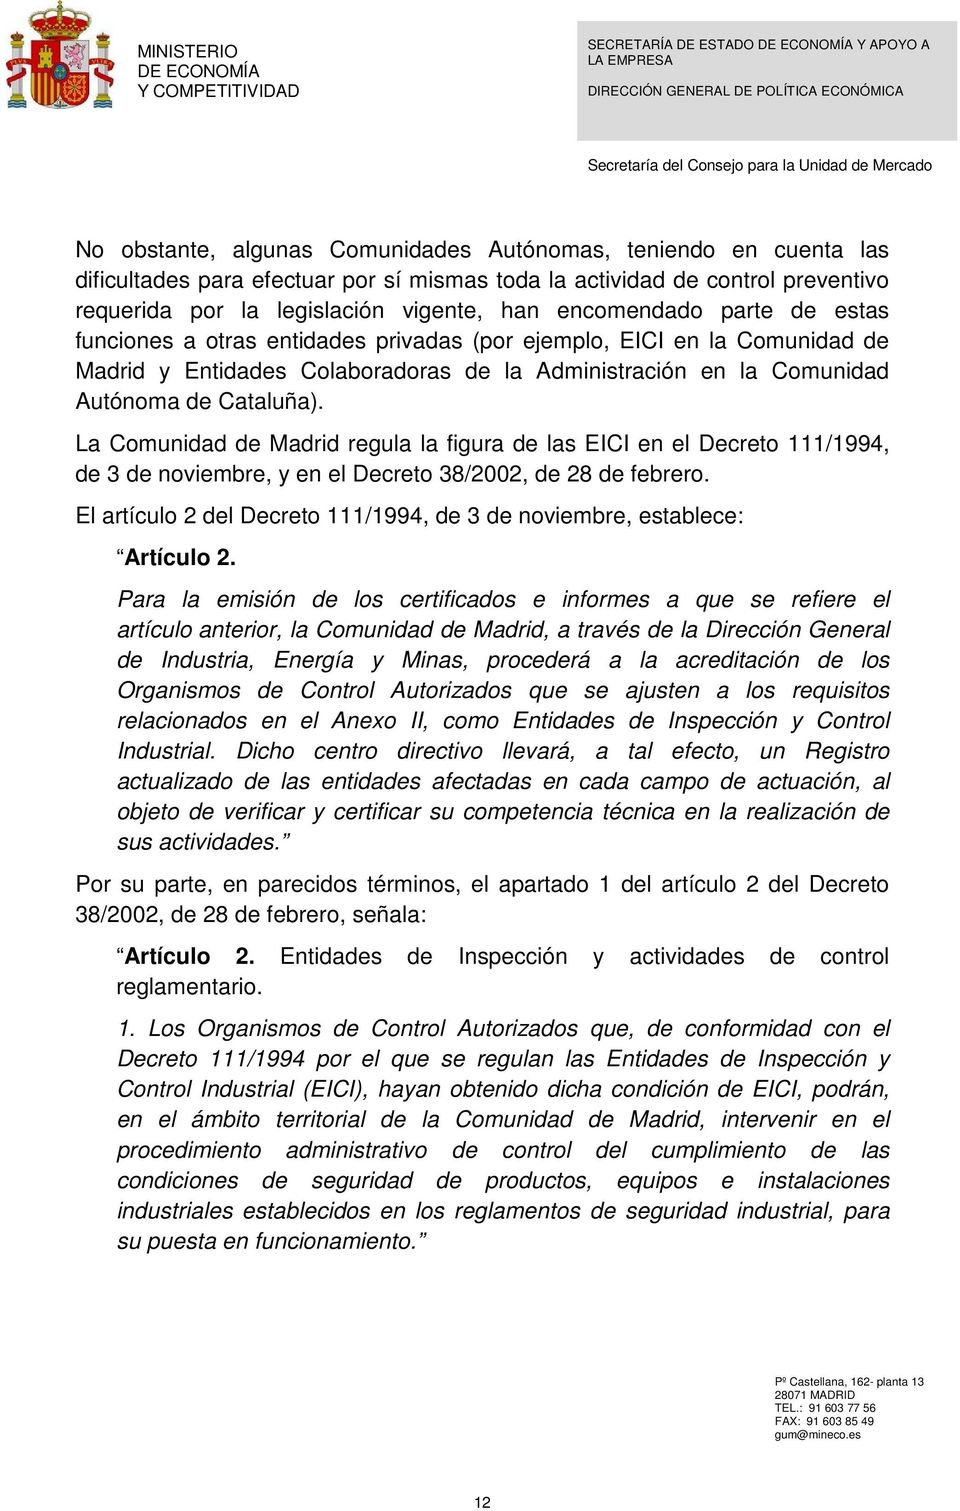 La Comunidad de Madrid regula la figura de las EICI en el Decreto 111/1994, de 3 de noviembre, y en el Decreto 38/2002, de 28 de febrero.